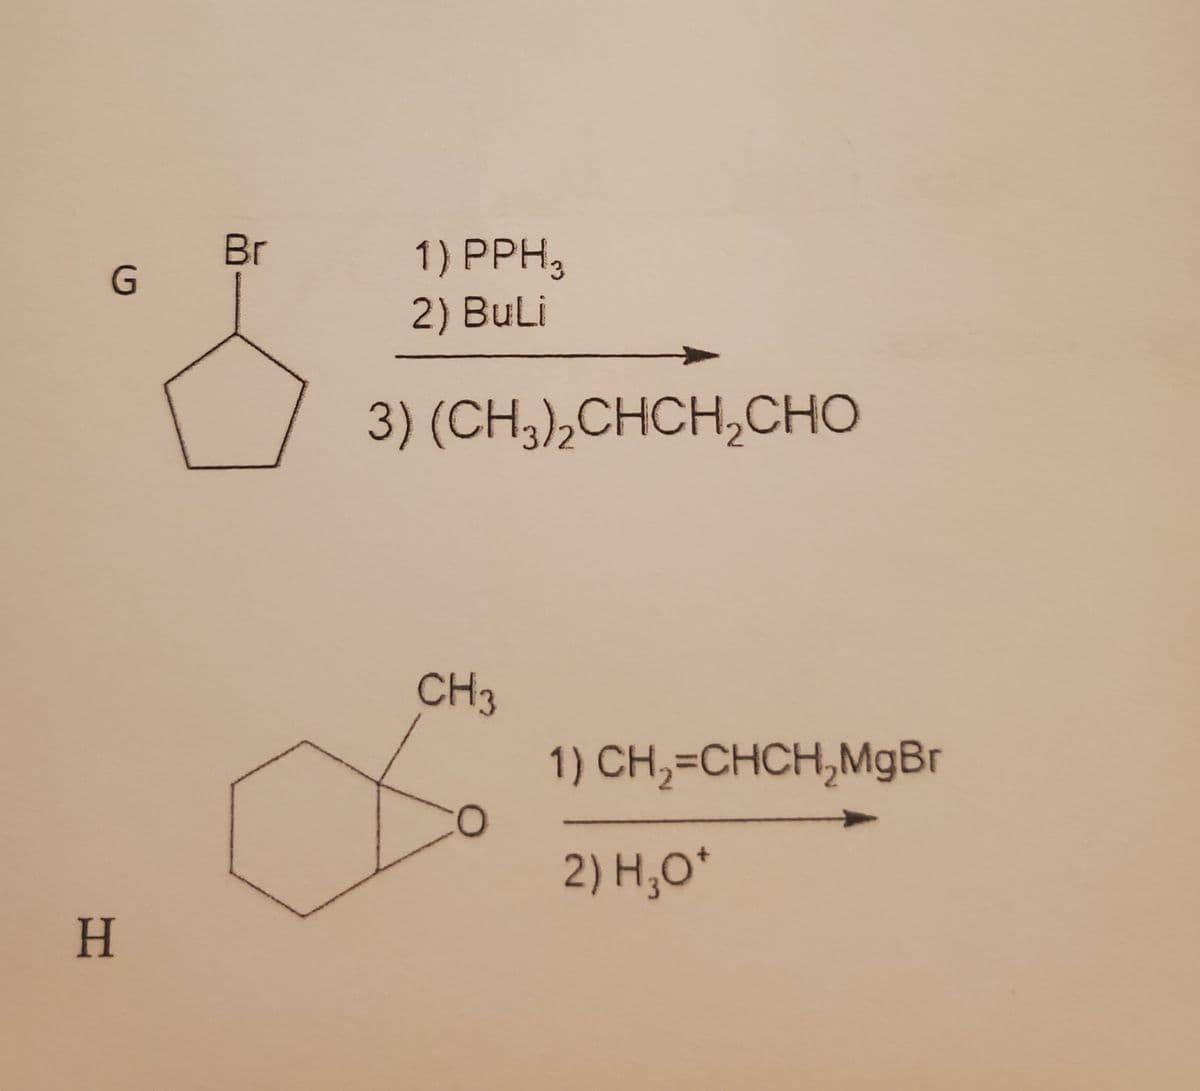 G
H
Br
1) PPH,
2) BuLi
3) (CH,),CHCH,CHO
CH3
O
1) CH₂=CHCH₂MgBr
2) H₂O*